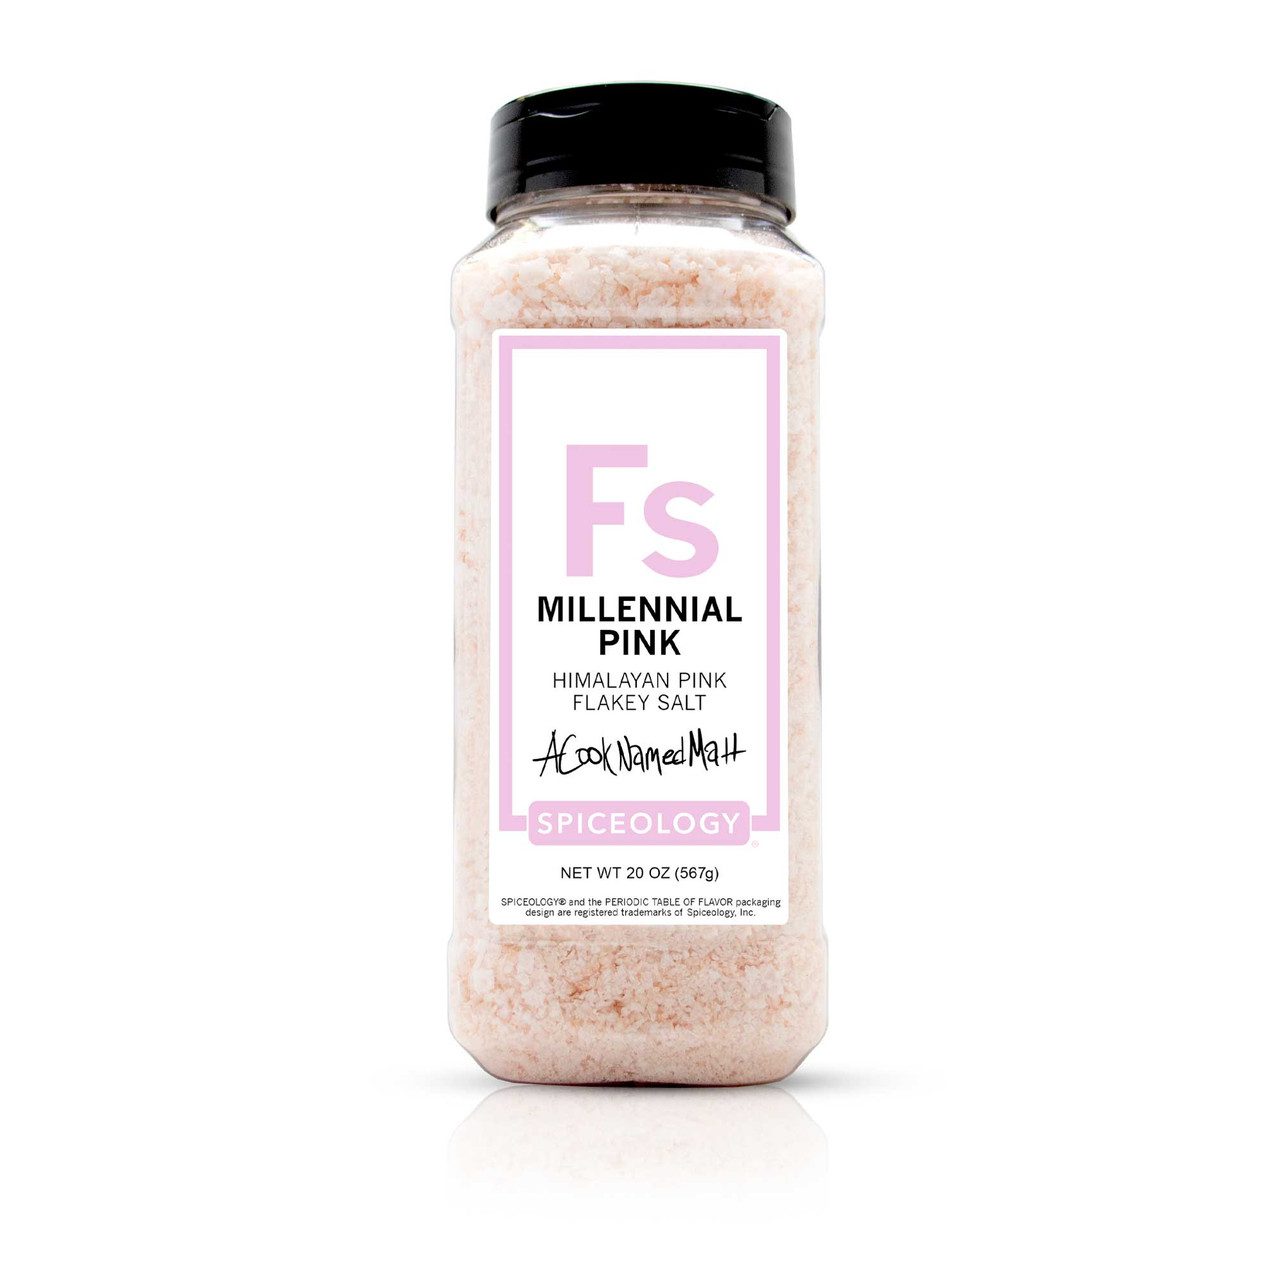 Spiceology Millennial Pink Flakey Salt from A Cook Named Matt